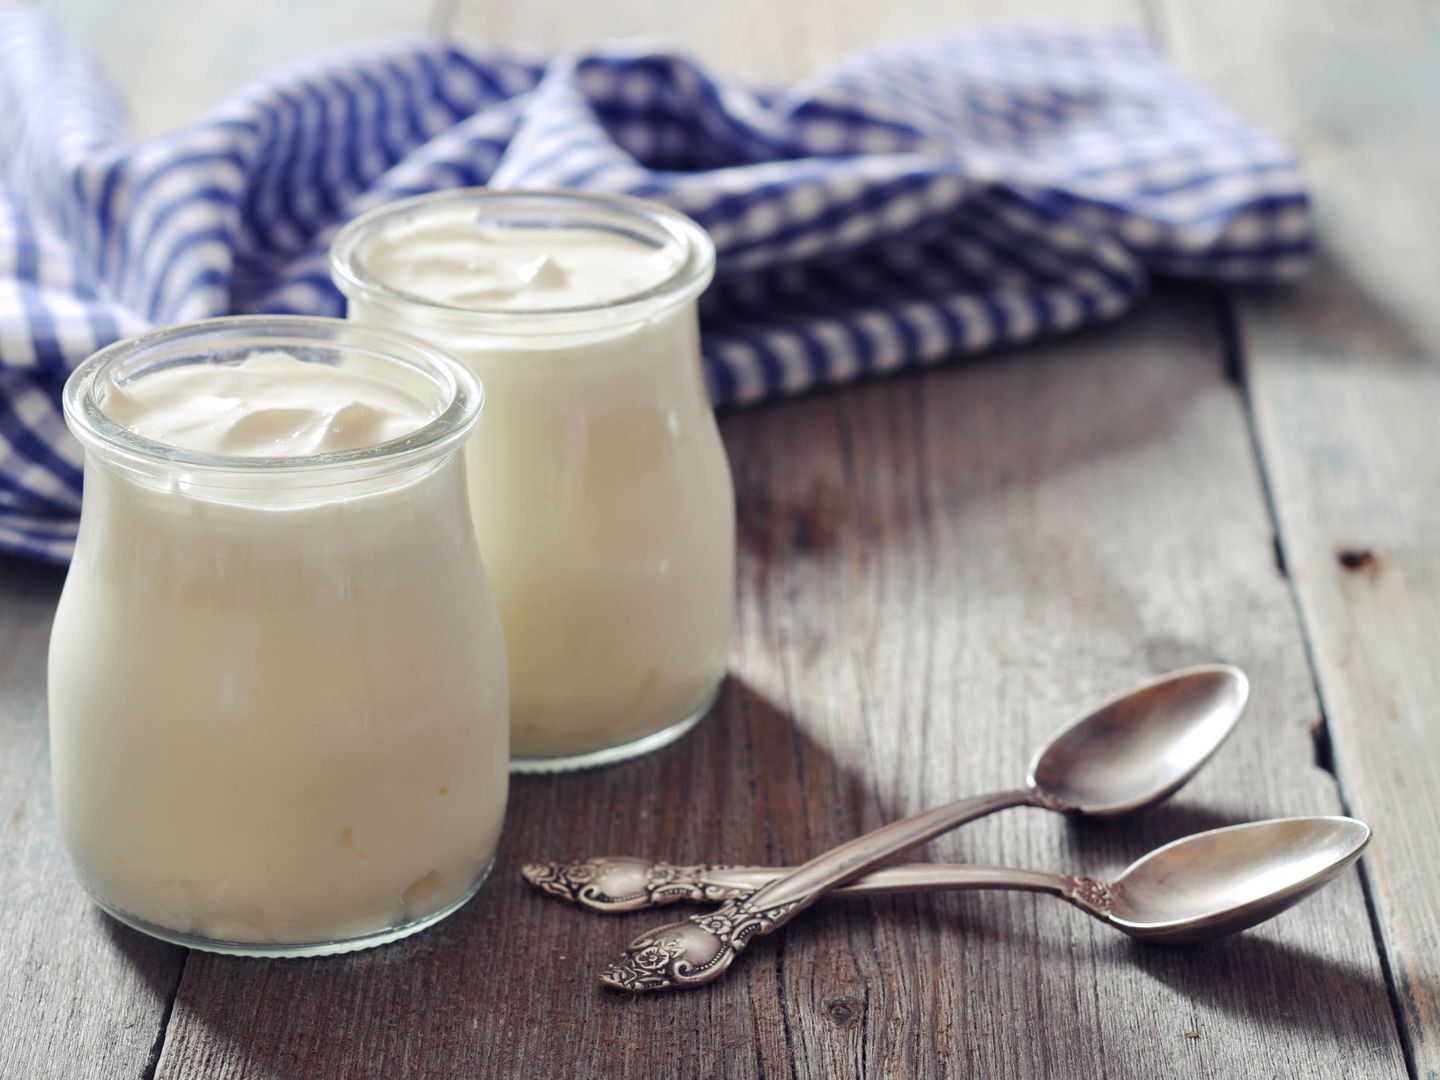 Los yogures ayudan a estabilizar la flora intestinal.